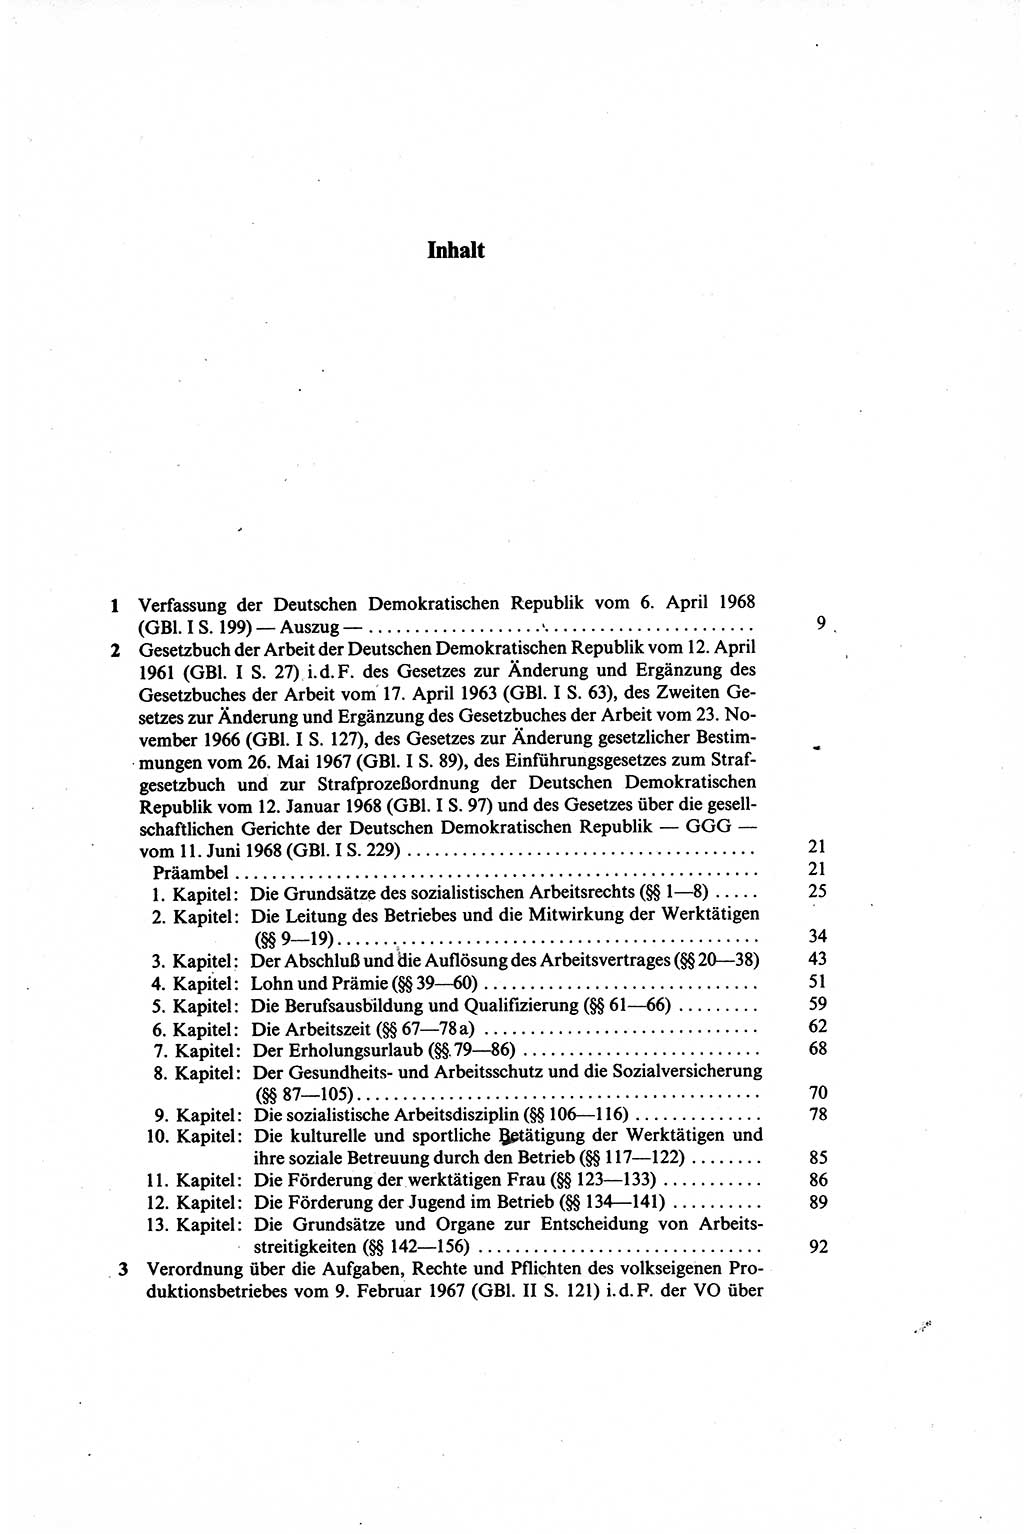 Gesetzbuch der Arbeit (GBA) und andere ausgewählte rechtliche Bestimmungen [Deutsche Demokratische Republik (DDR)] 1968, Seite 5 (GBA DDR 1968, S. 5)